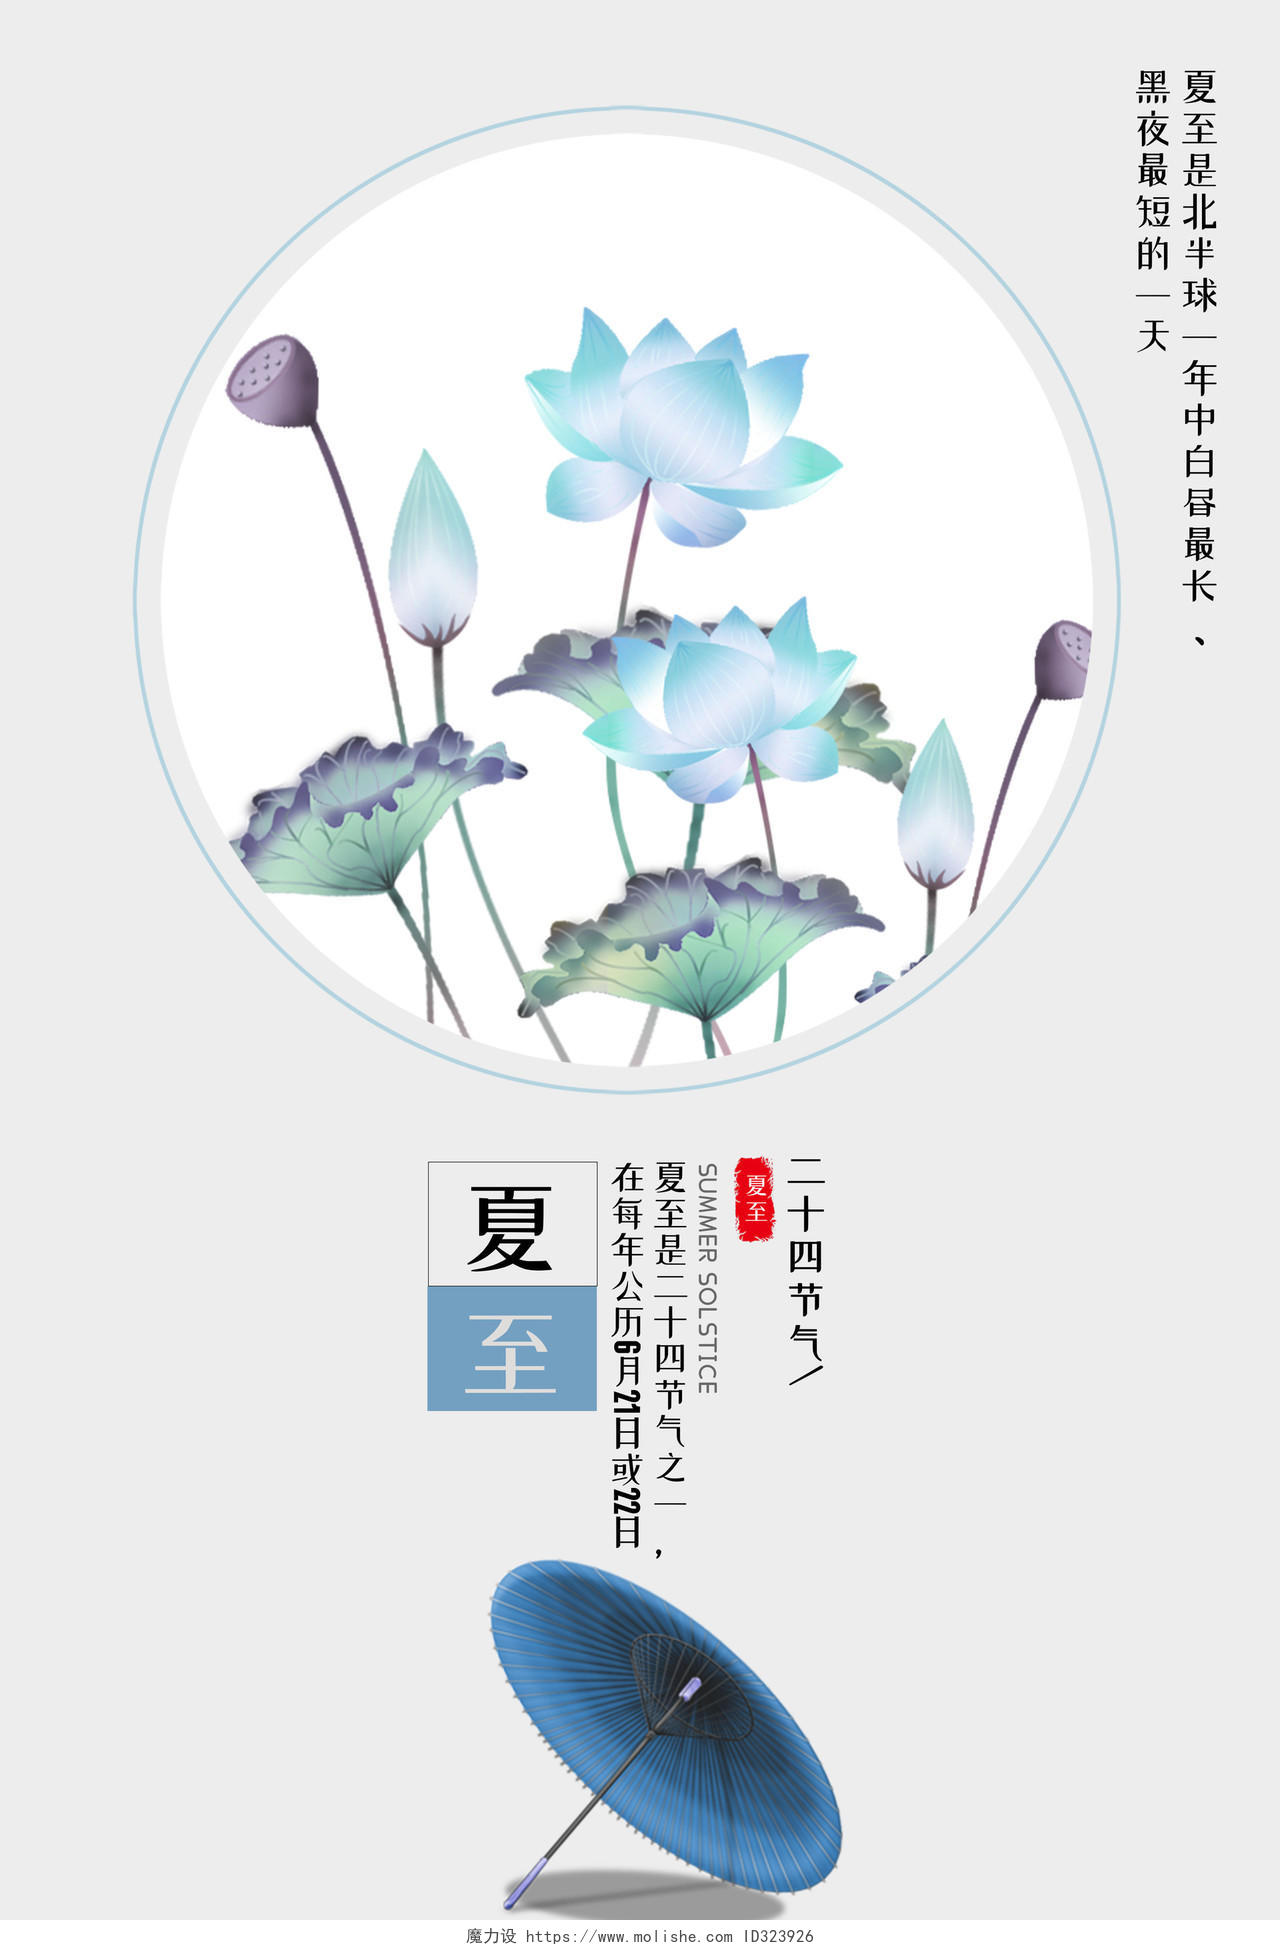 中国风简约2019二十四节气夏至蓝色莲花宣传海报